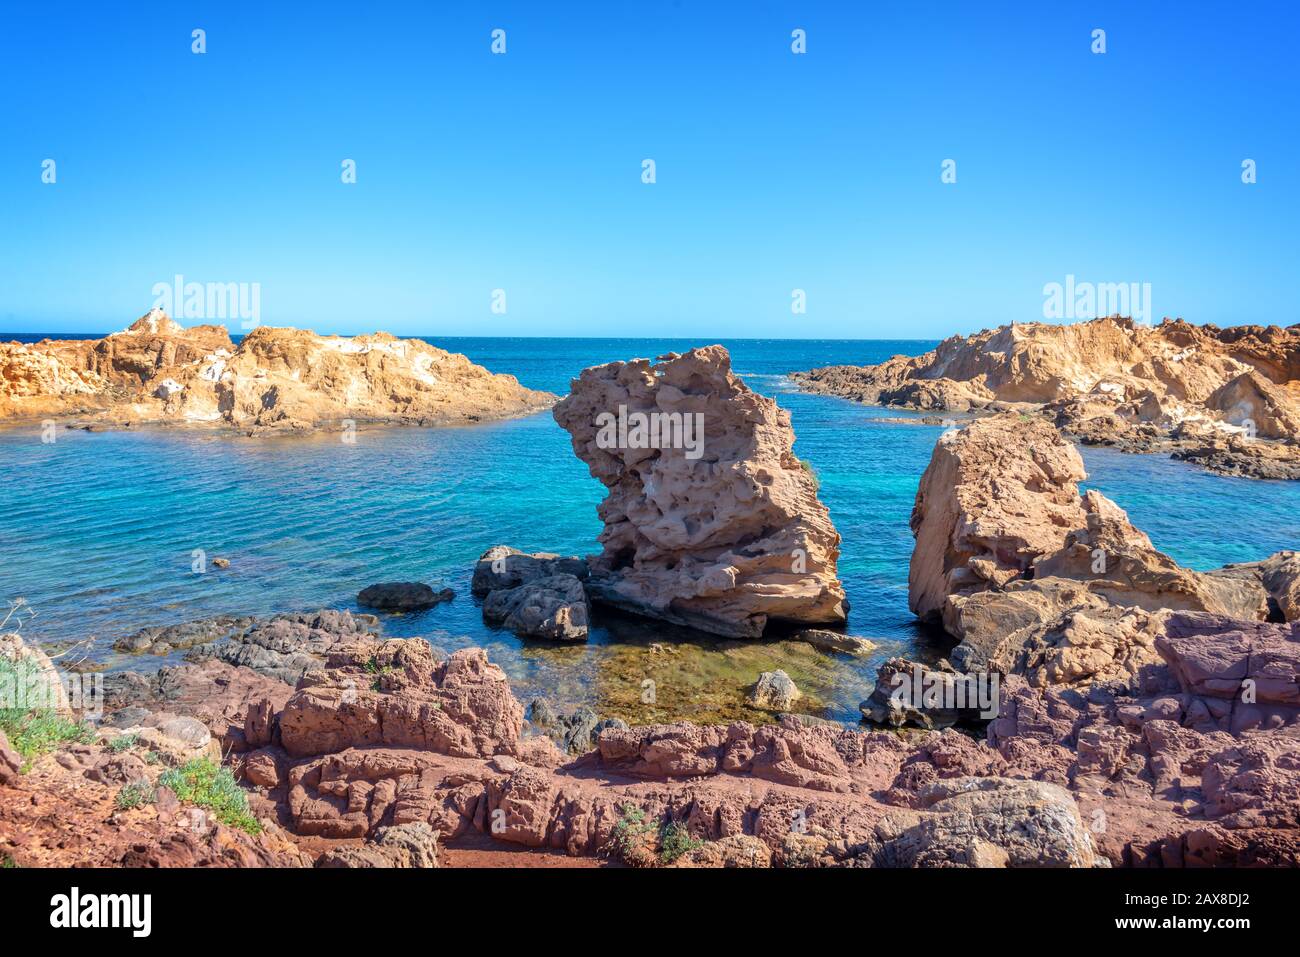 Rochers dans l'eau sur la côte de Minorque, îles Baléares, Espagne Banque D'Images